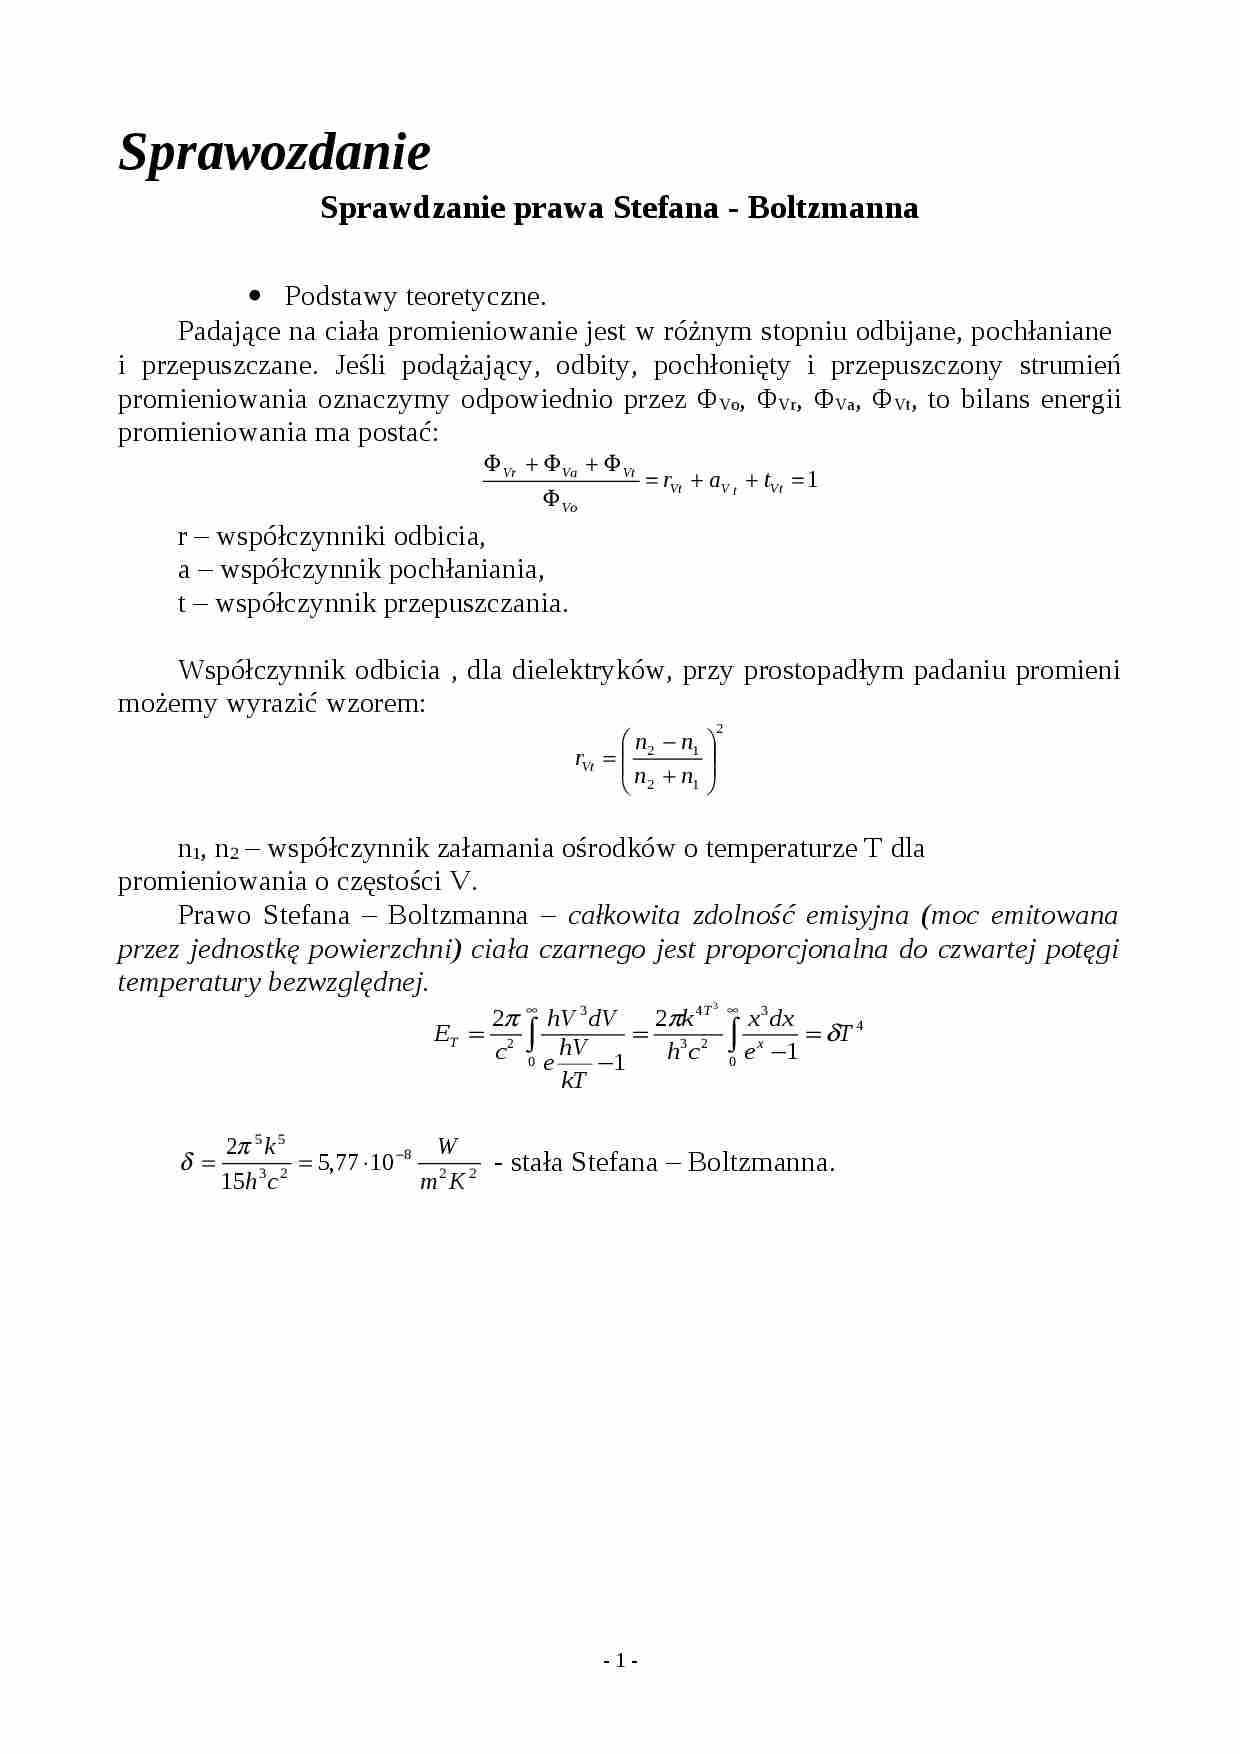  Sprawdzanie prawa Stefana - Boltzmanna - strona 1